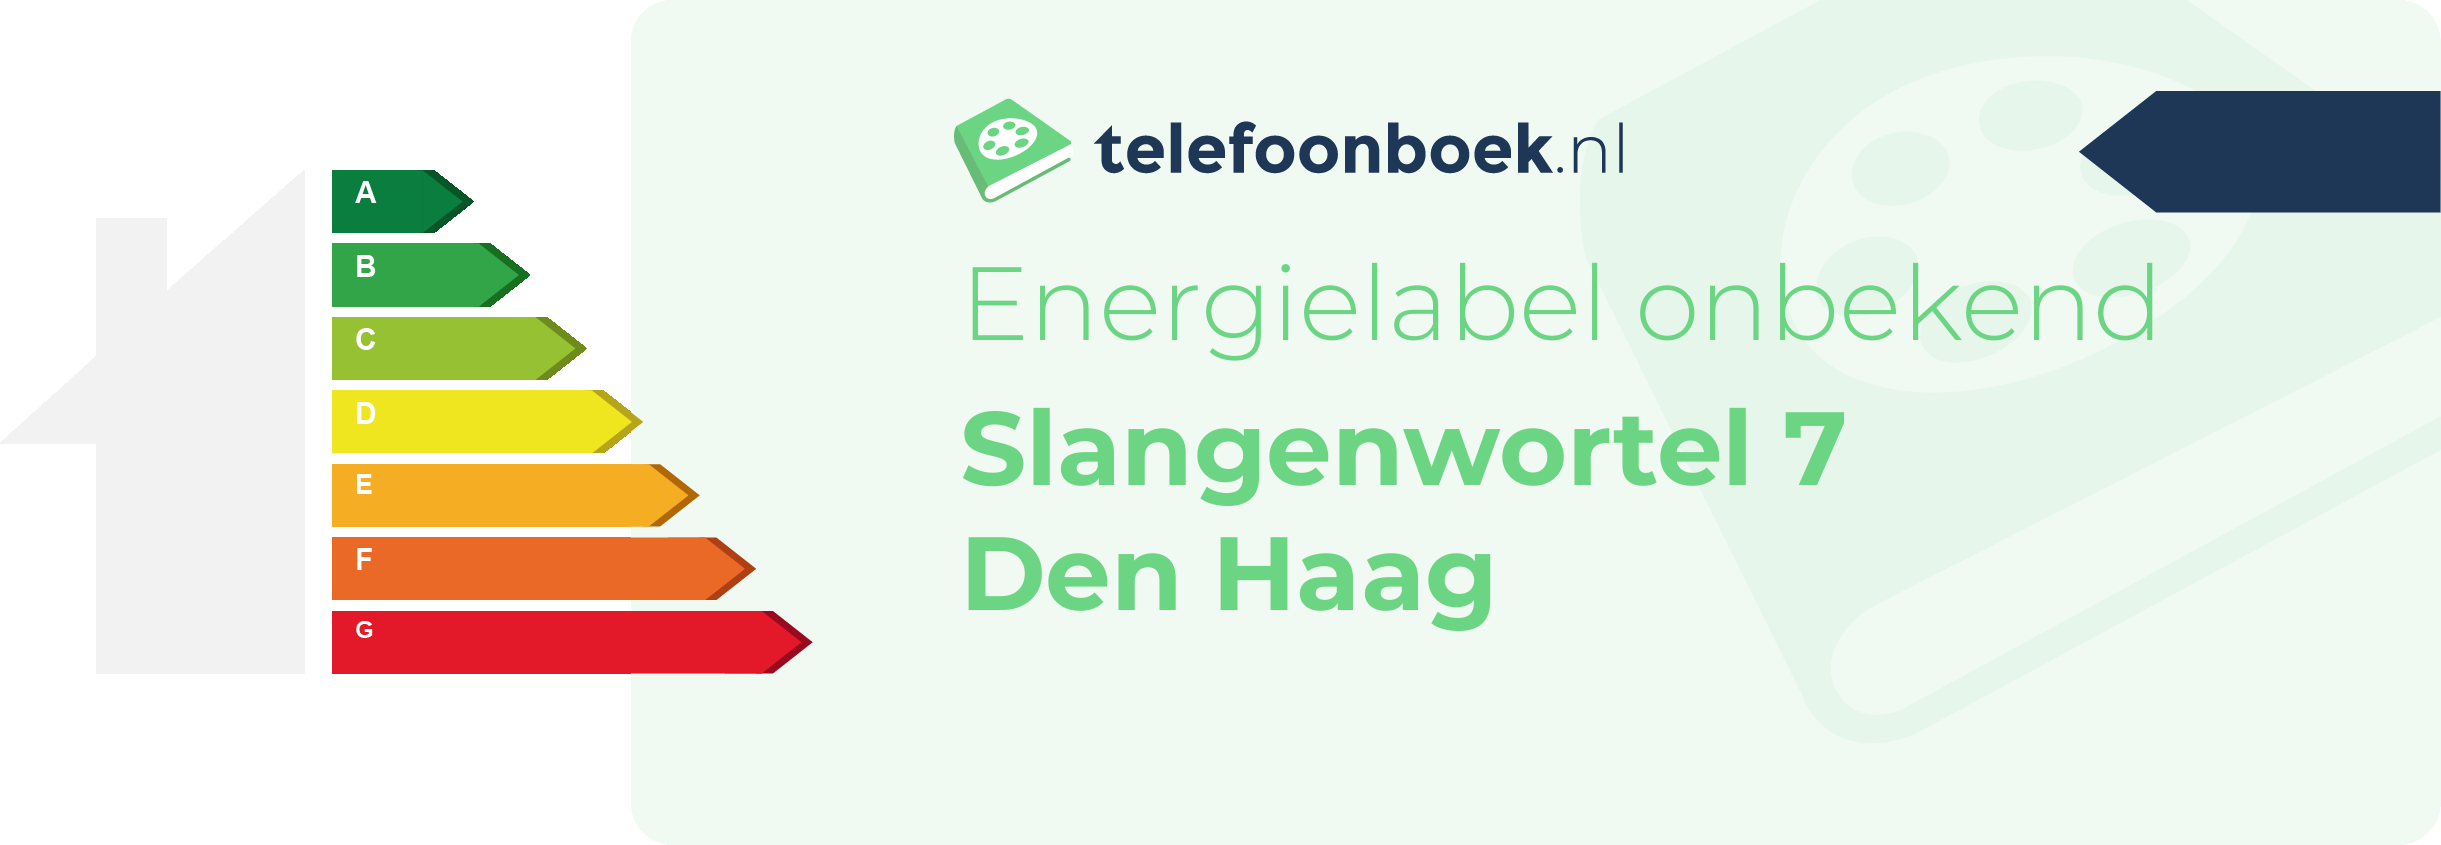 Energielabel Slangenwortel 7 Den Haag